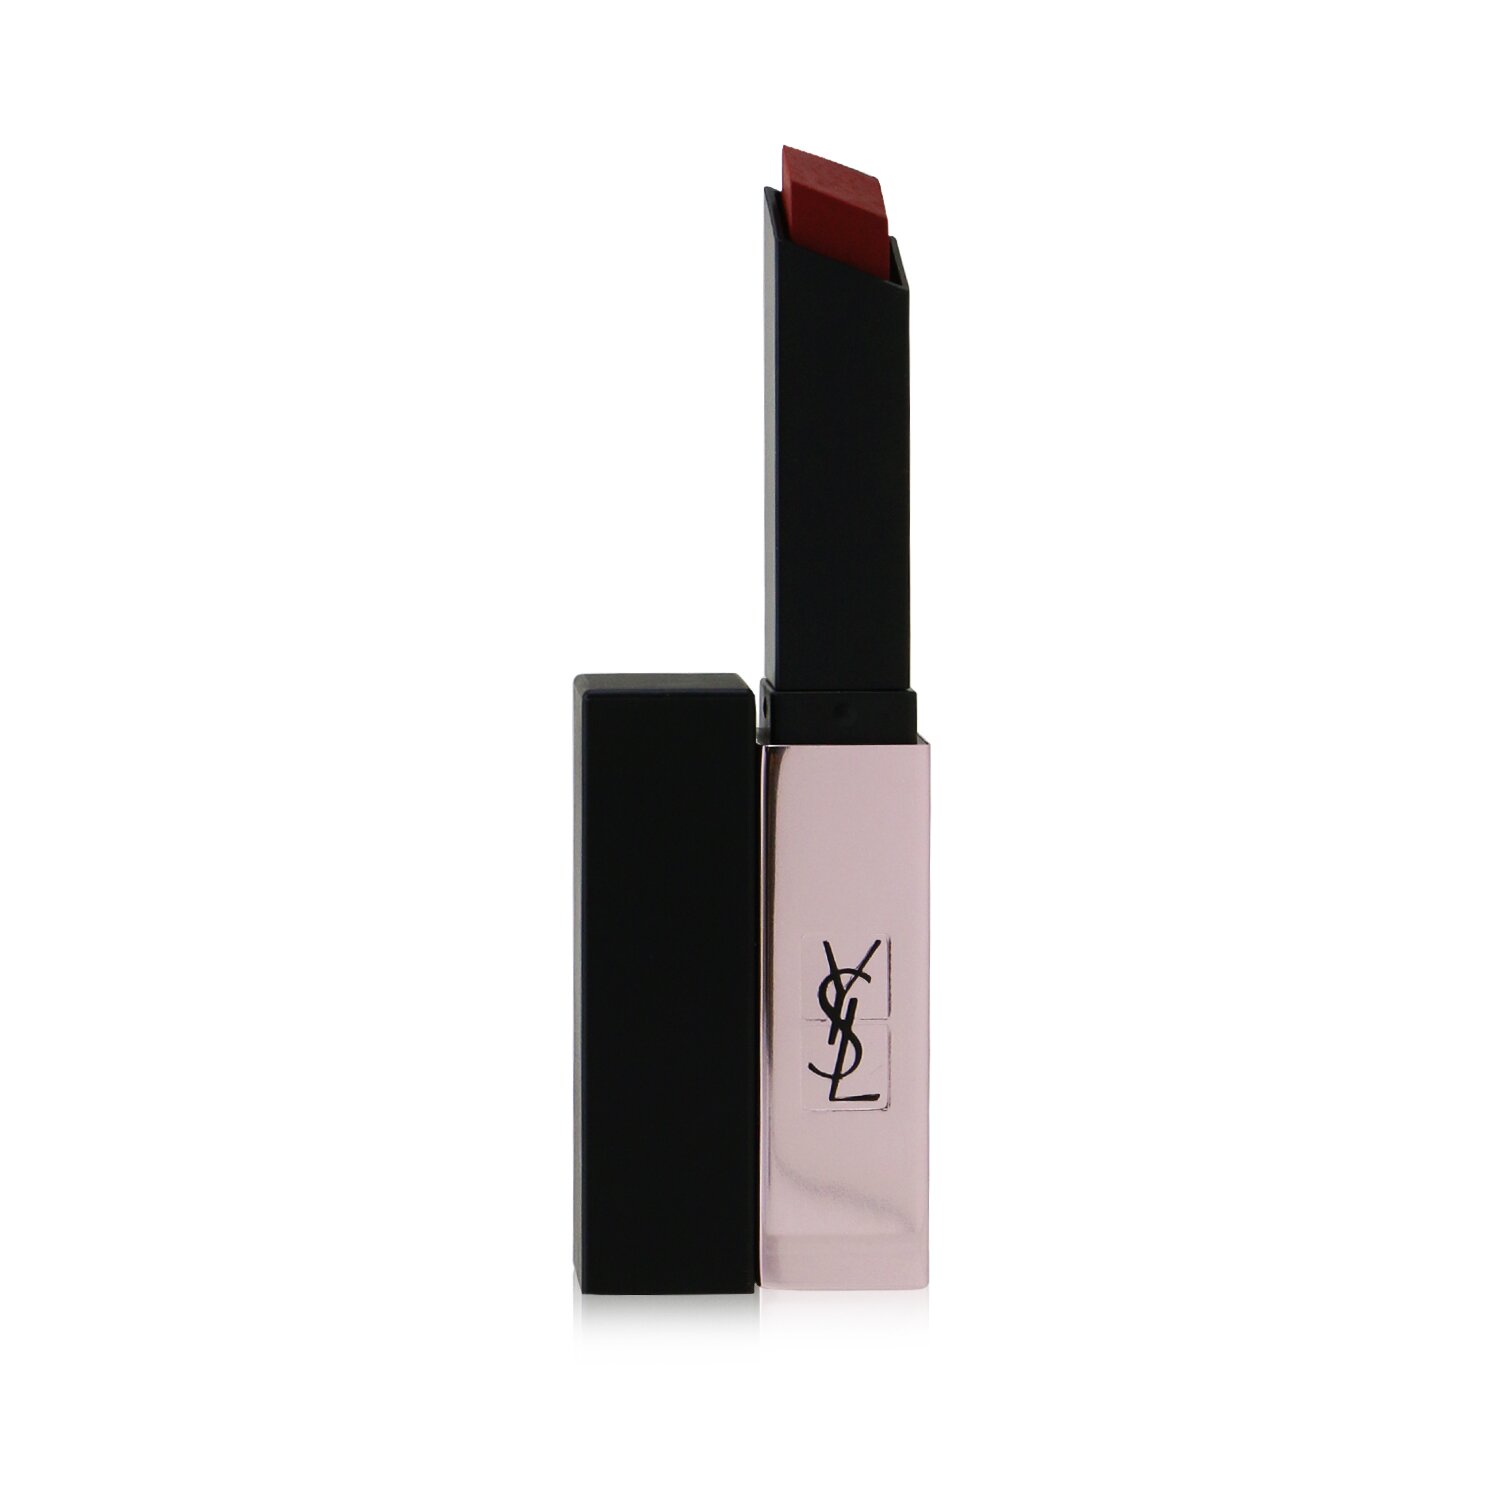 Guerlain KissKiss Shine Bloom Lipstick 3.2 Gr Floral Nude